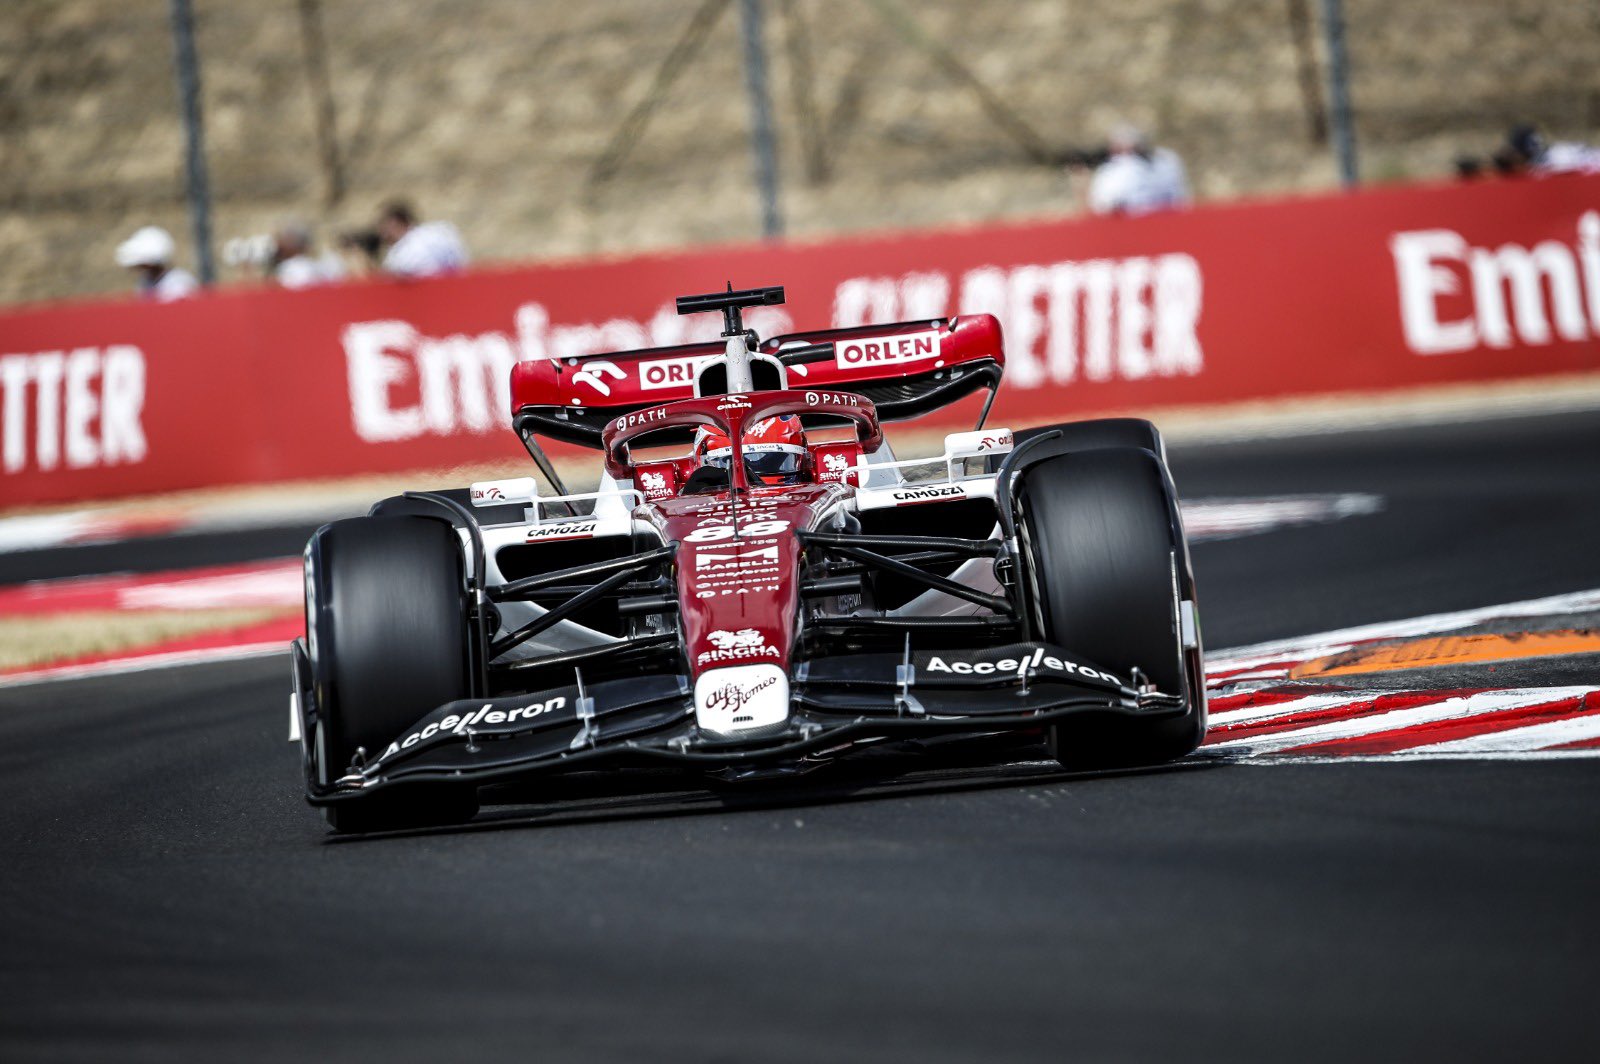 Robert Kubica in EL1 during the 2022 Hungarian Grand Prix